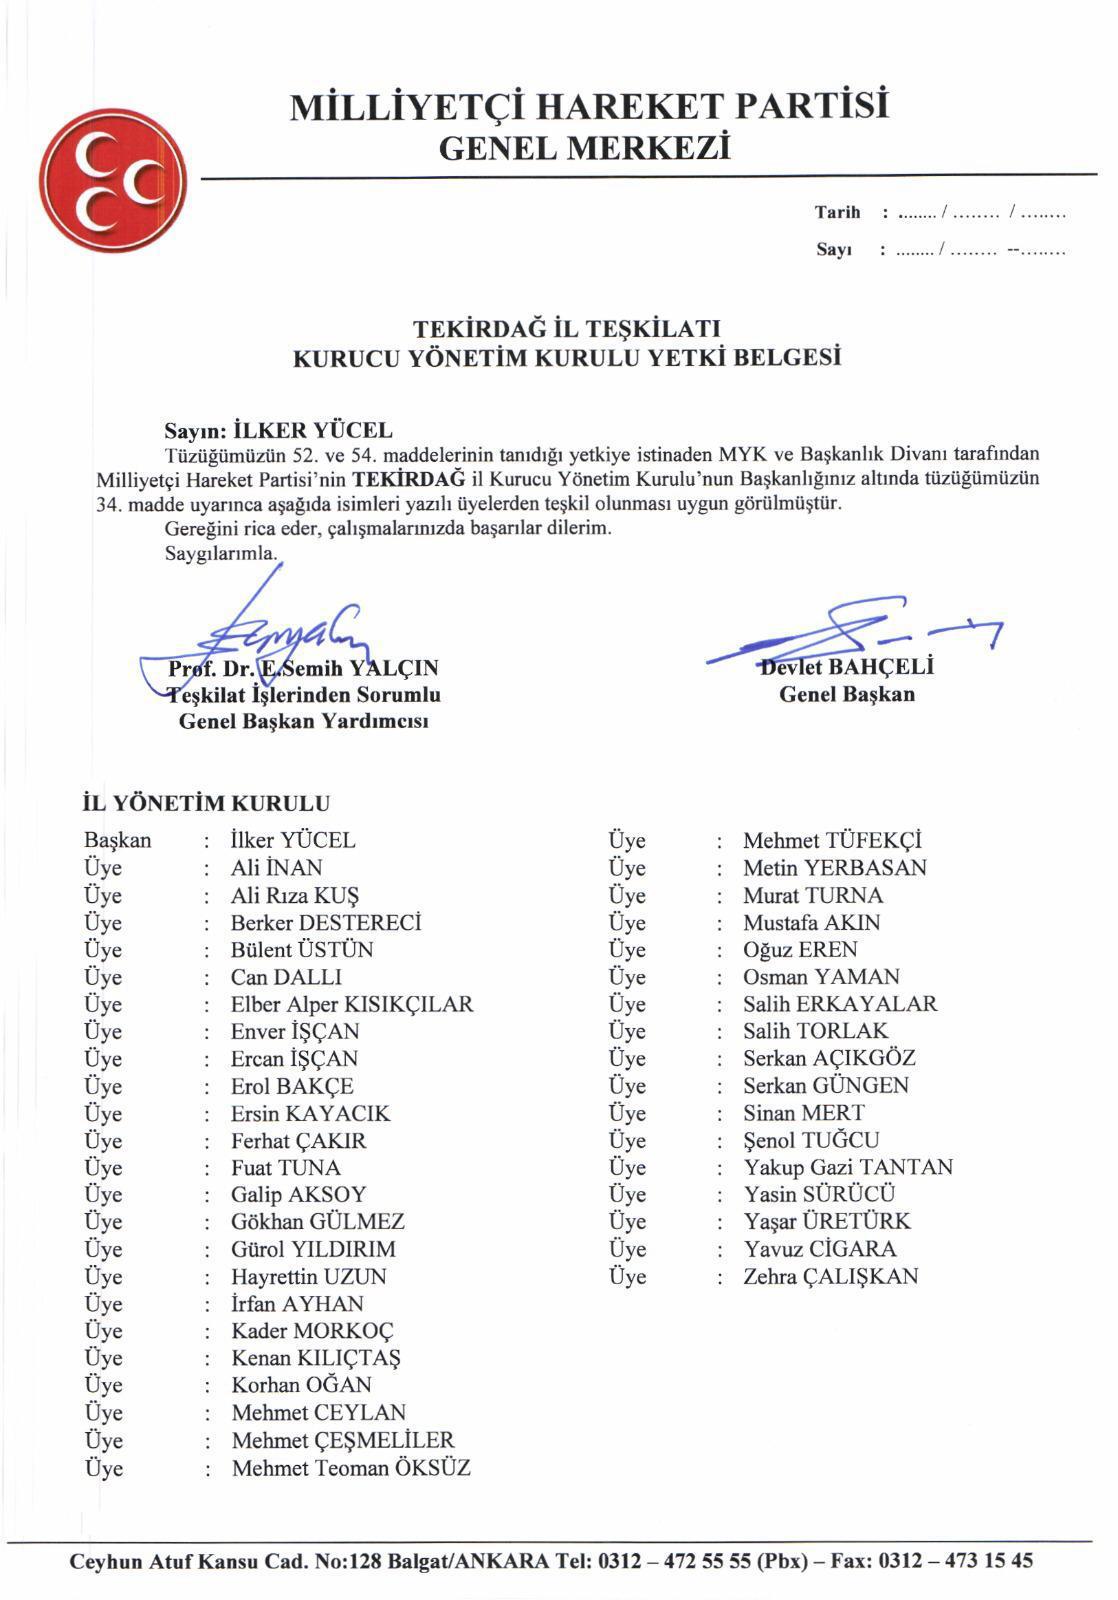 MHP İl Yönetimi Genel Merkez Tarafından Onaylandı